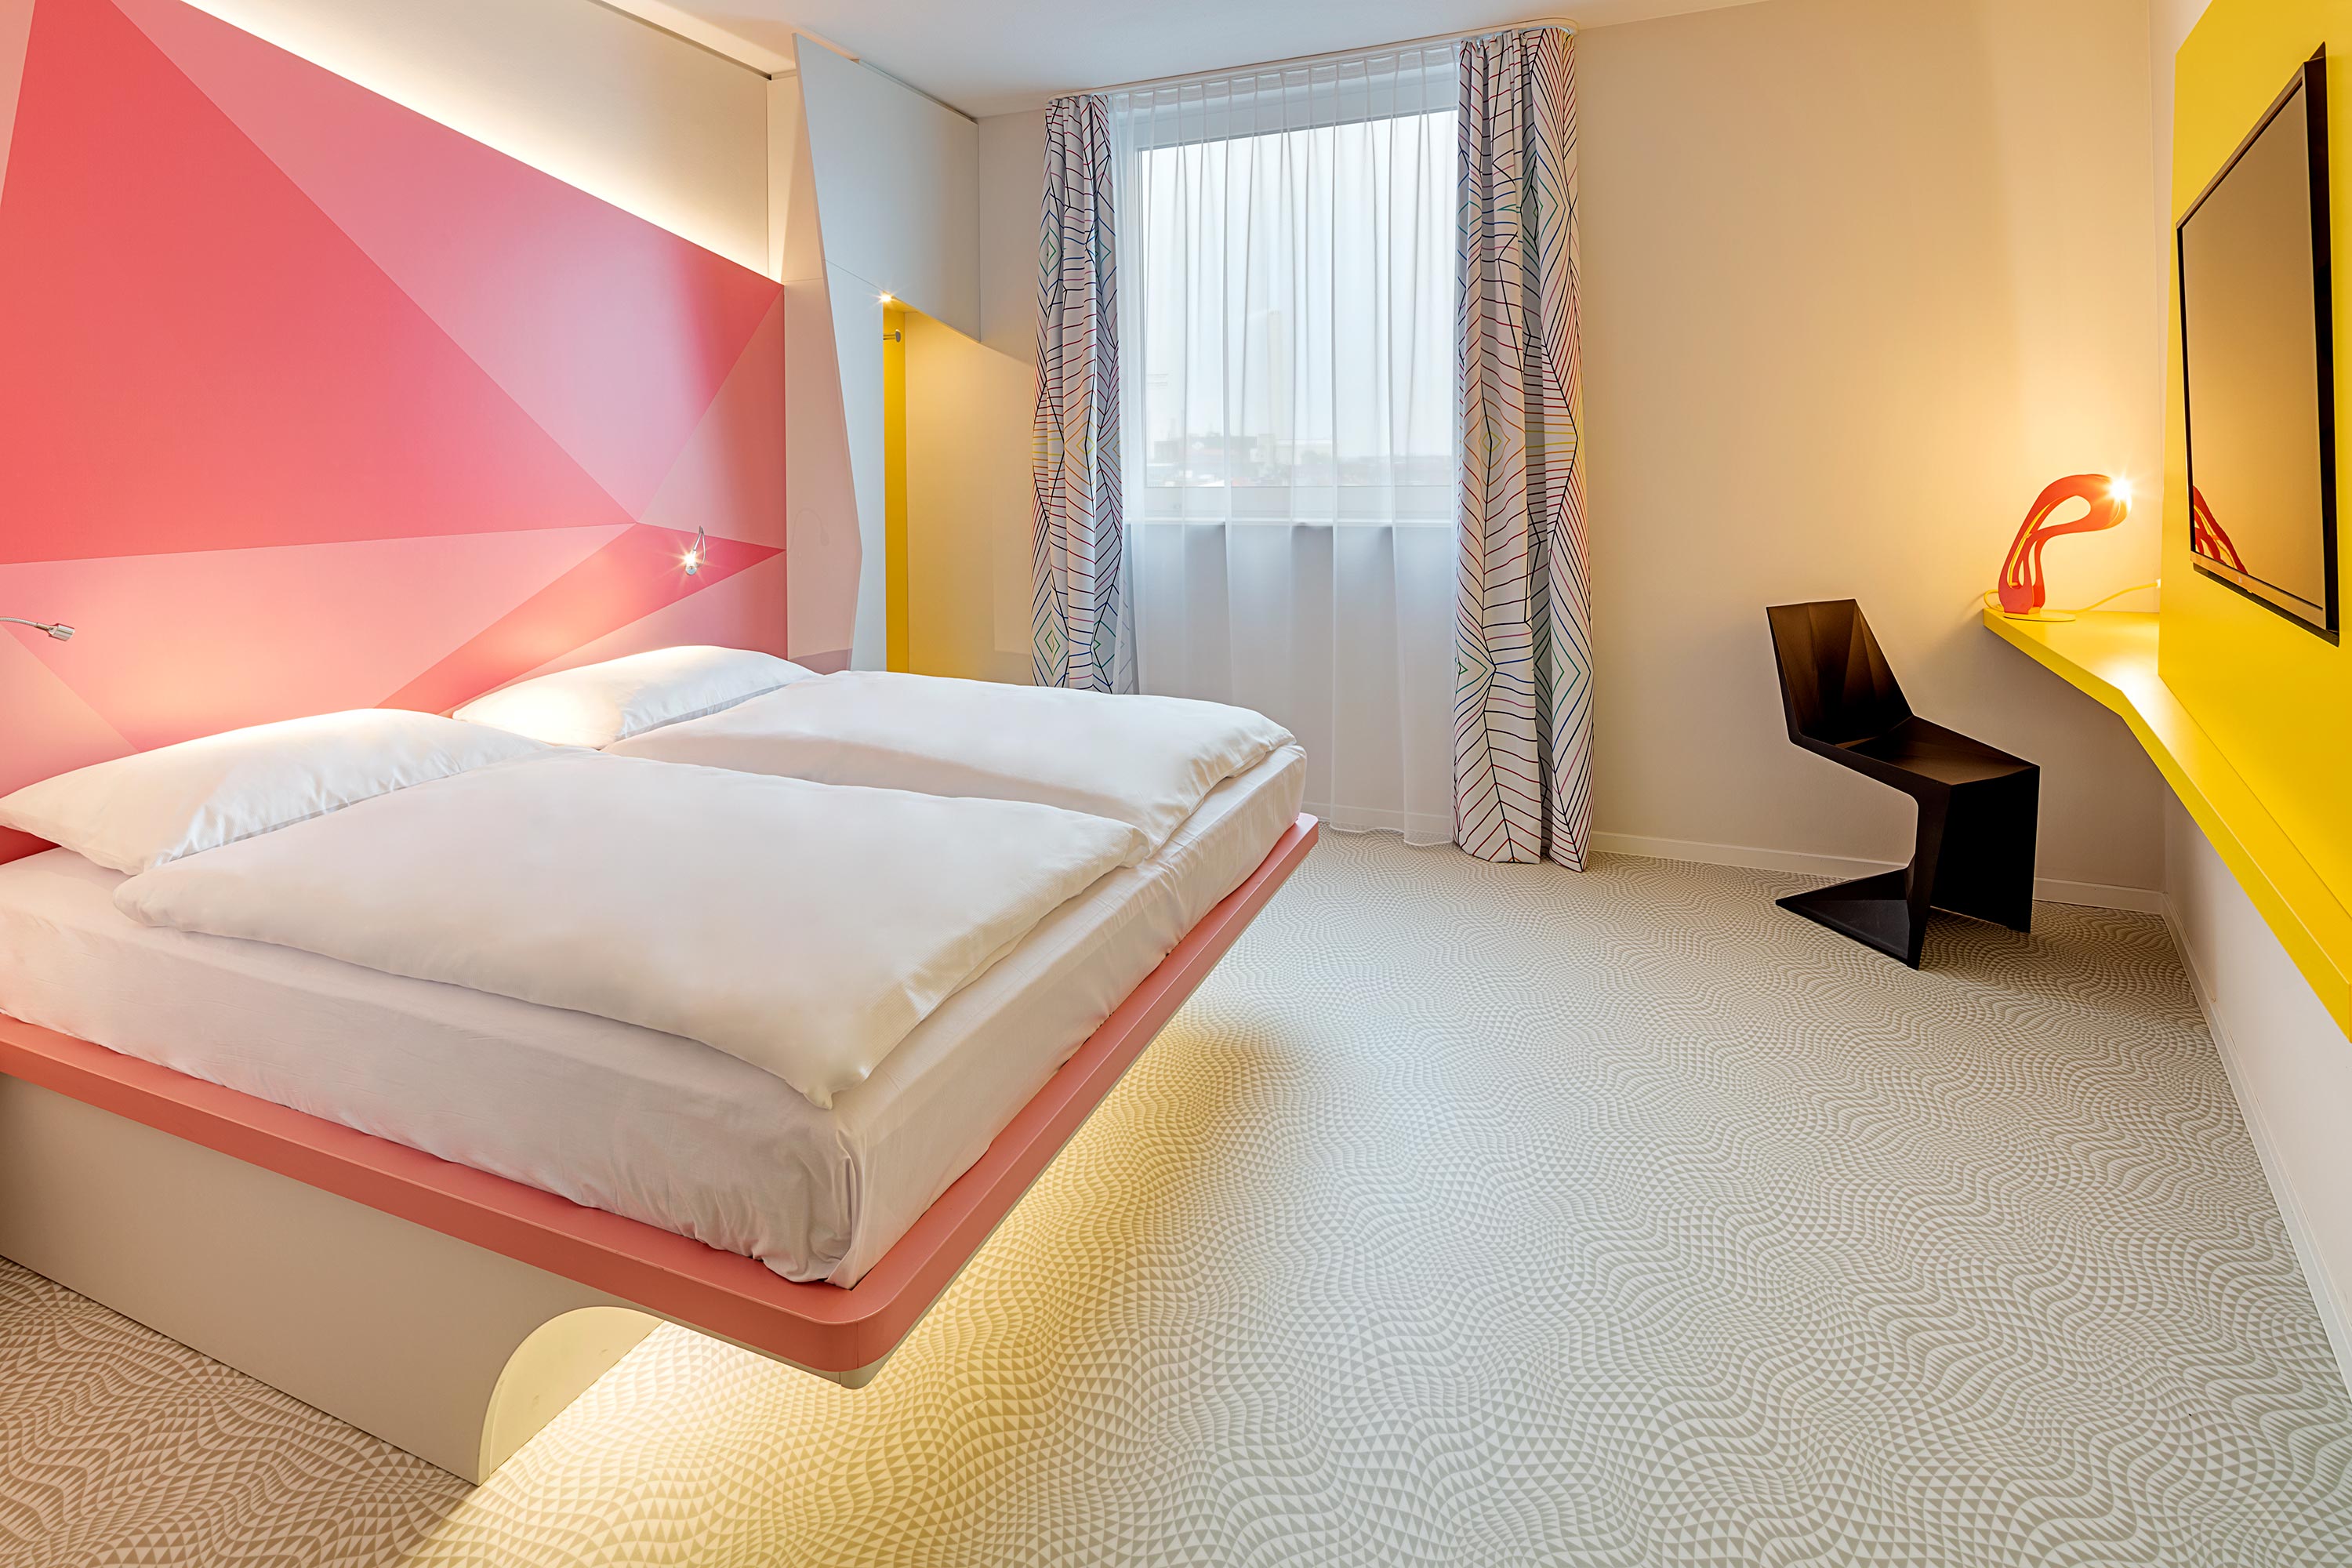 Ein rosa Bett in einem gelben Hotelzimmer